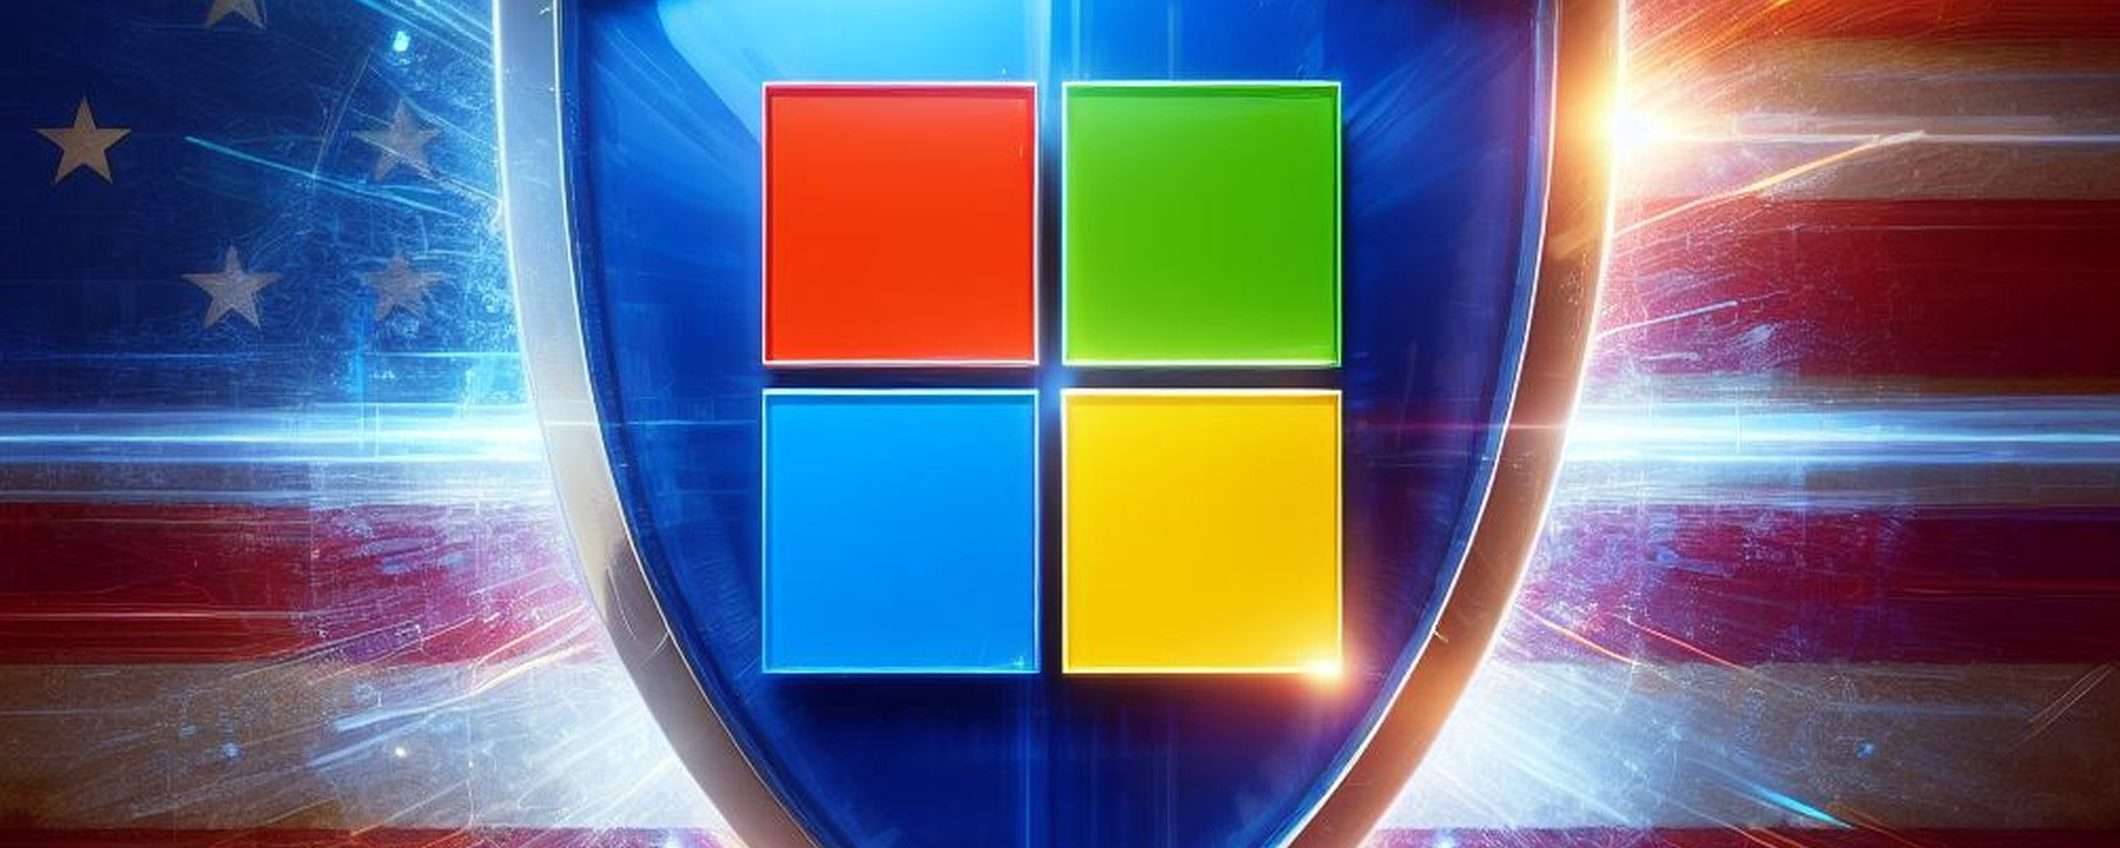 Microsoft Authenticator blocca le notifiche sospette